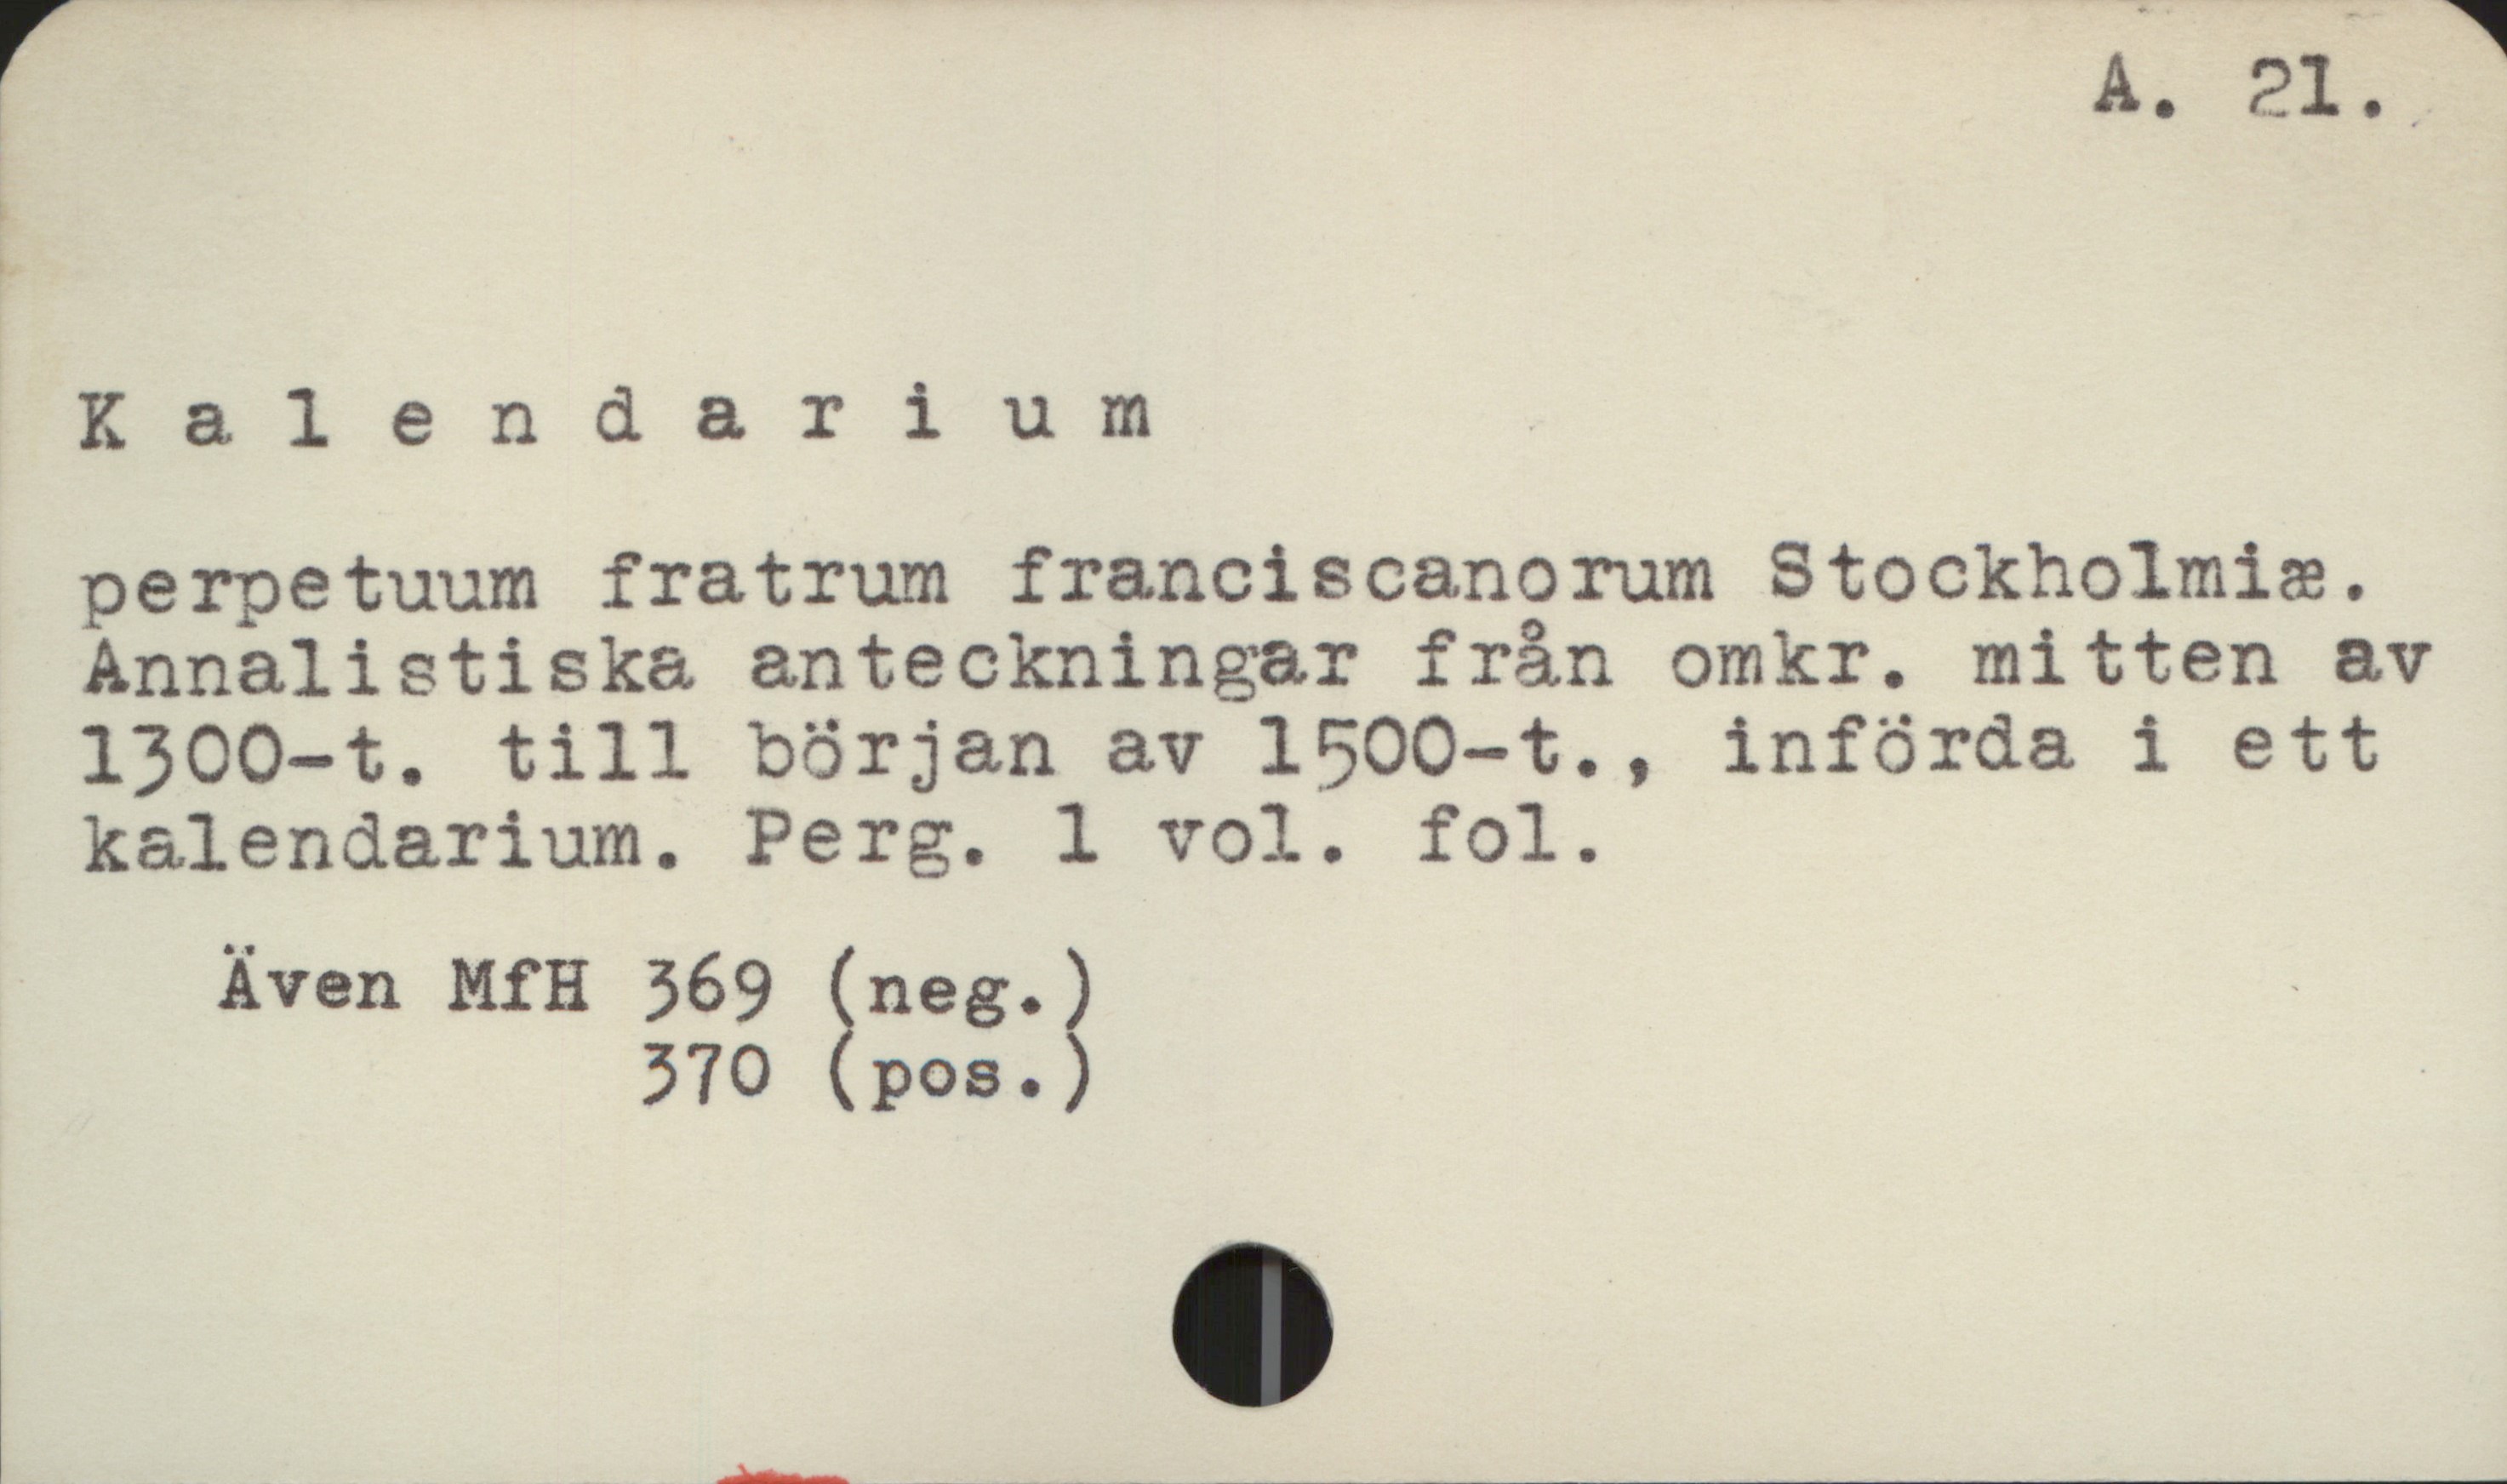 Kalendarium A 21

Kalendarium

perpetuum fratrum franciscanorum Stockholmiæ.
Annalistiska anteckningar från omkr. mitten av
1300-t. till början av 1500-t., införda i ett
kalendarium. Perg. l vol. fol.

     Även MfH 369 (neg.)
                        370 (pos.)